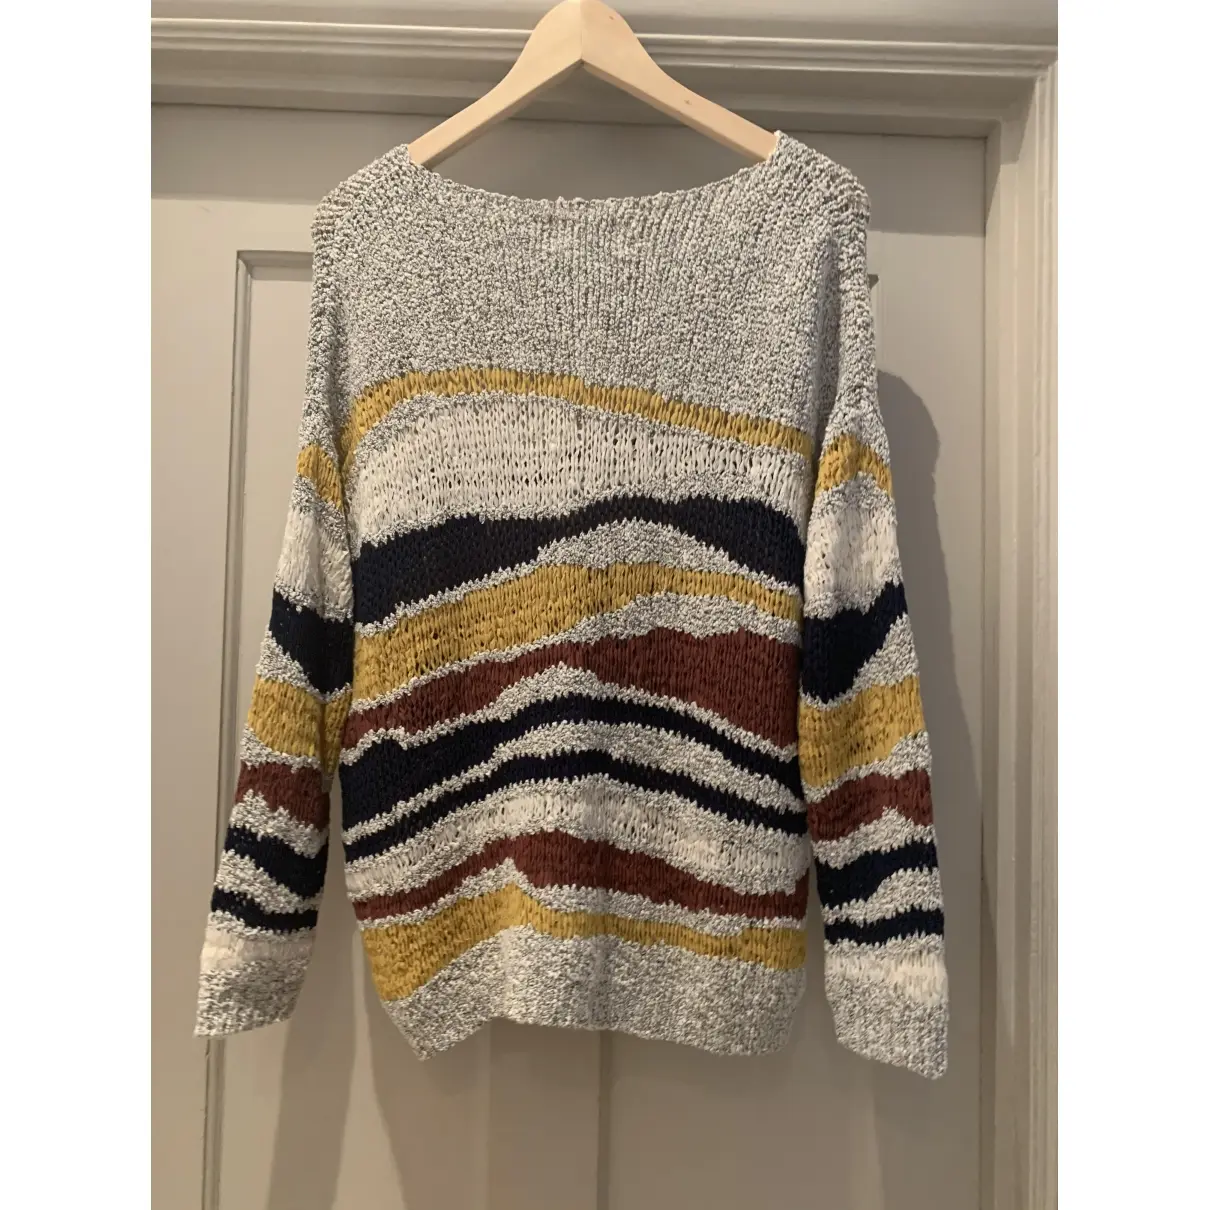 Sézane Spring Summer 2019 jumper for sale